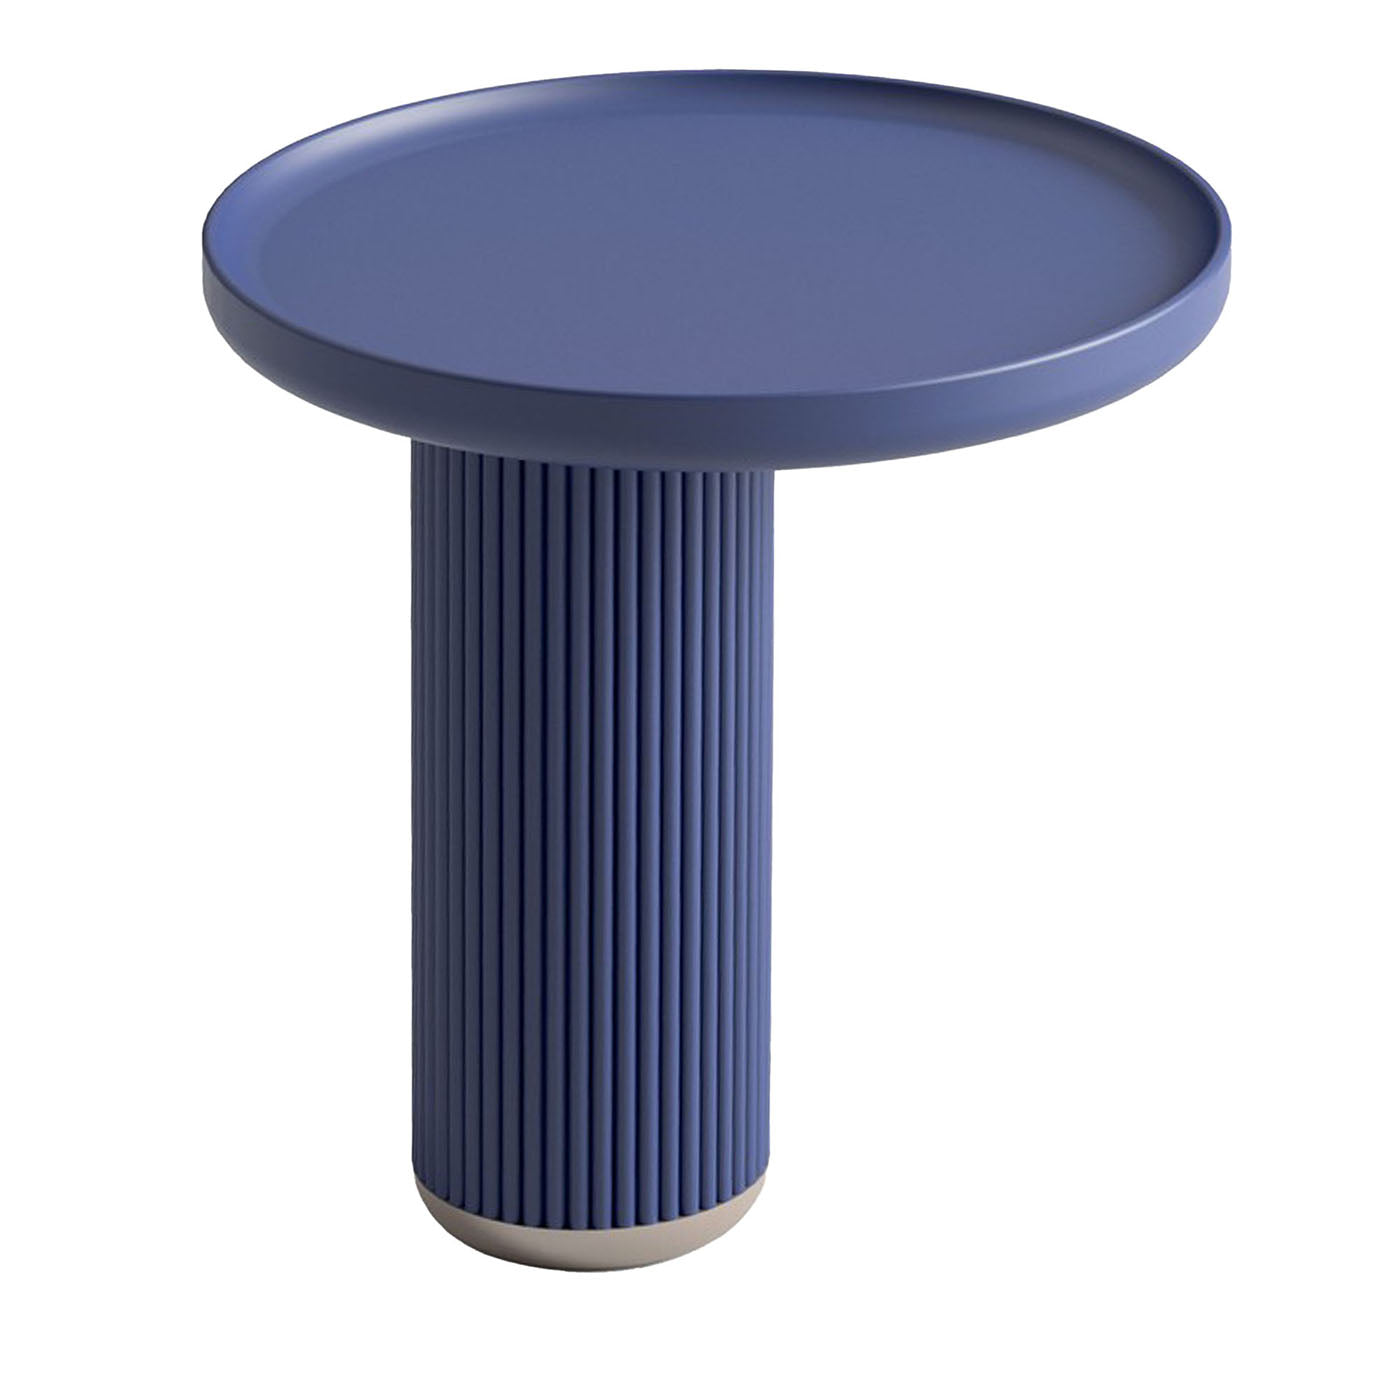 Table d'appoint ronde bleue - Vue principale